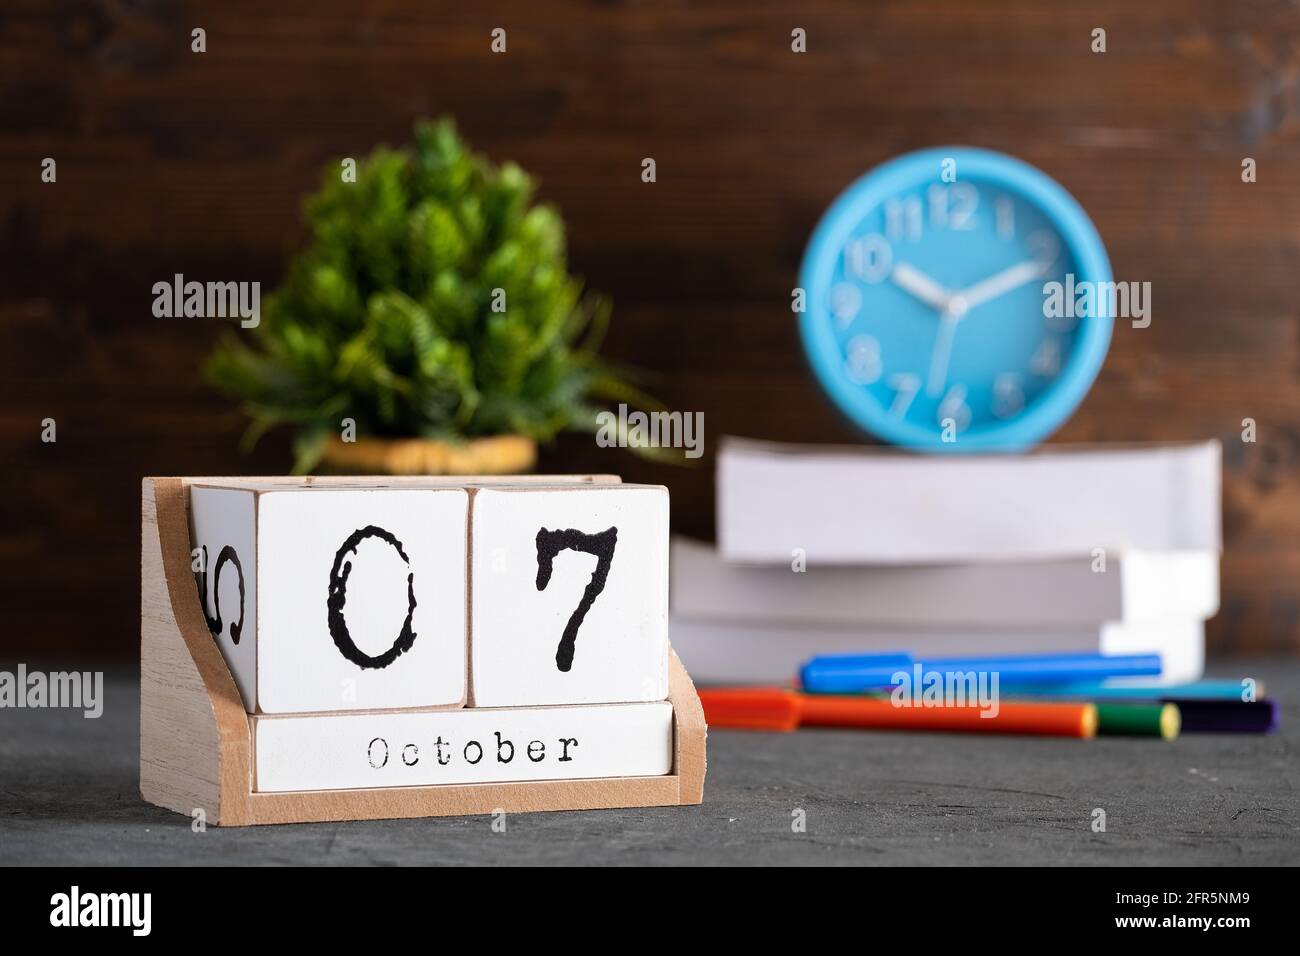 7 octobre. Octobre 07 calendrier cube en bois avec objets flous sur fond. Banque D'Images